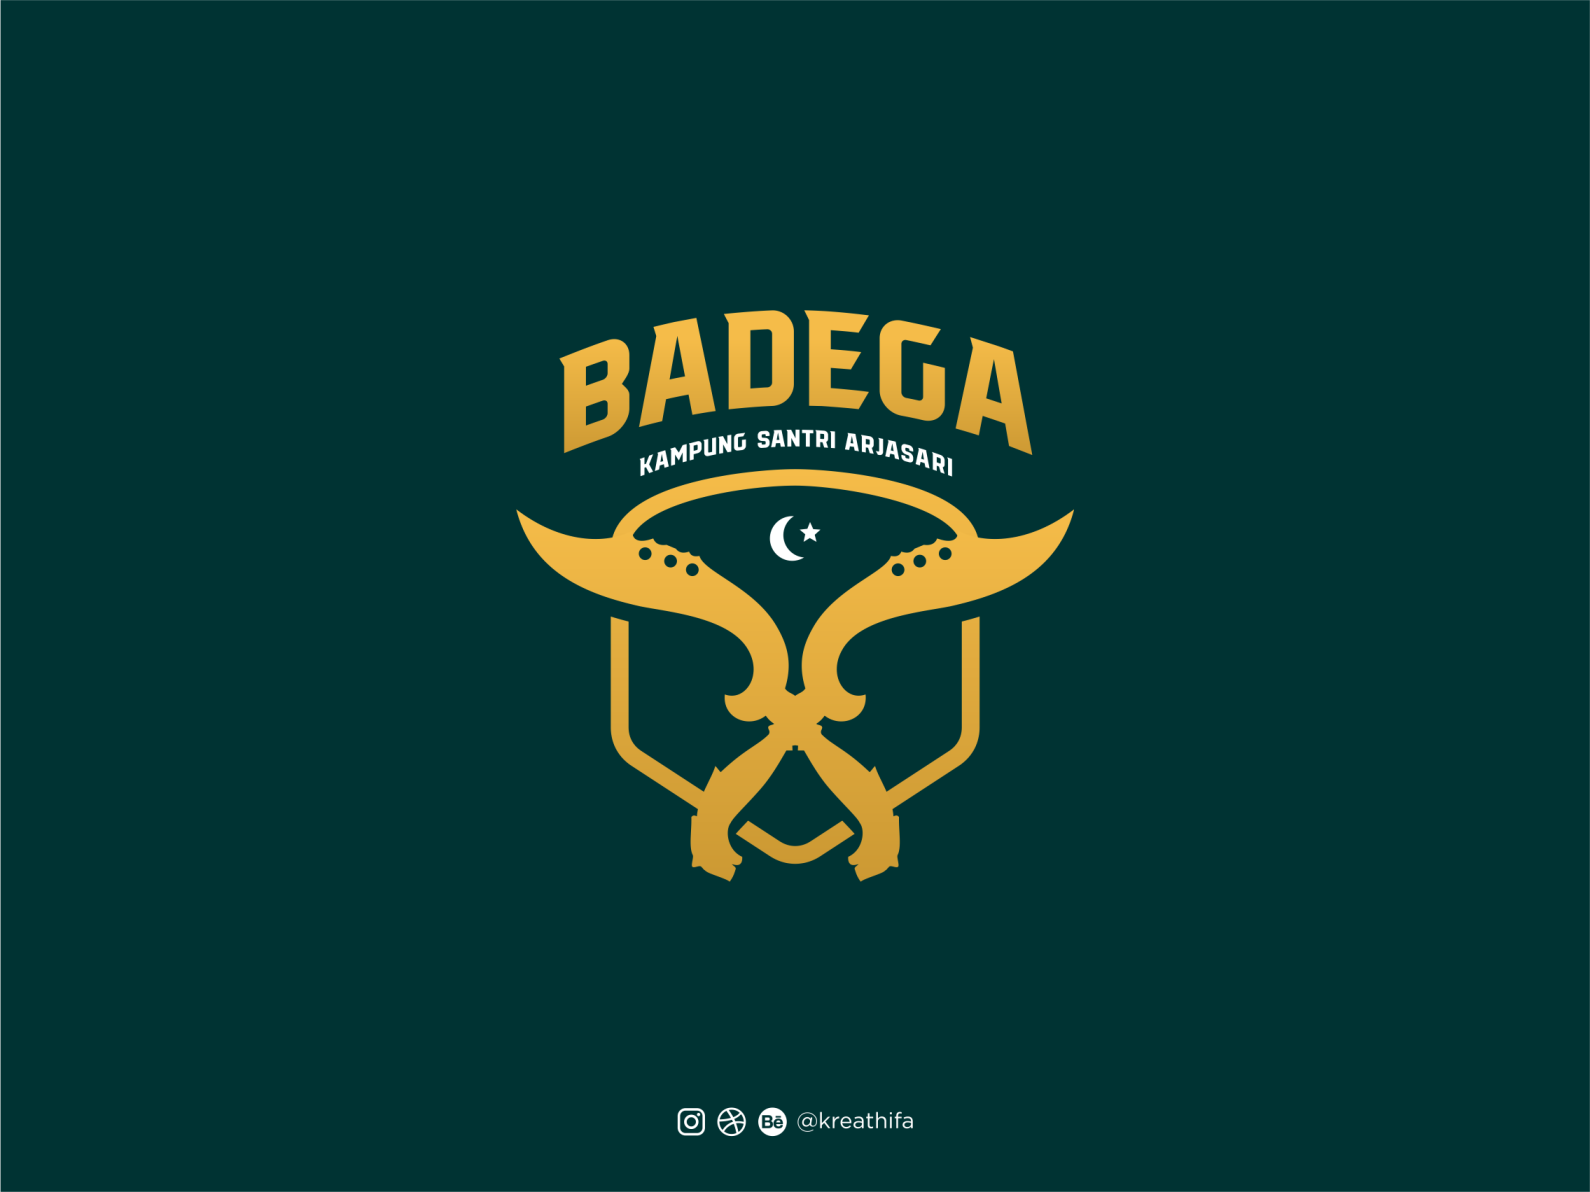 Badega Logo Design by Kreathifa Studio on Dribbble